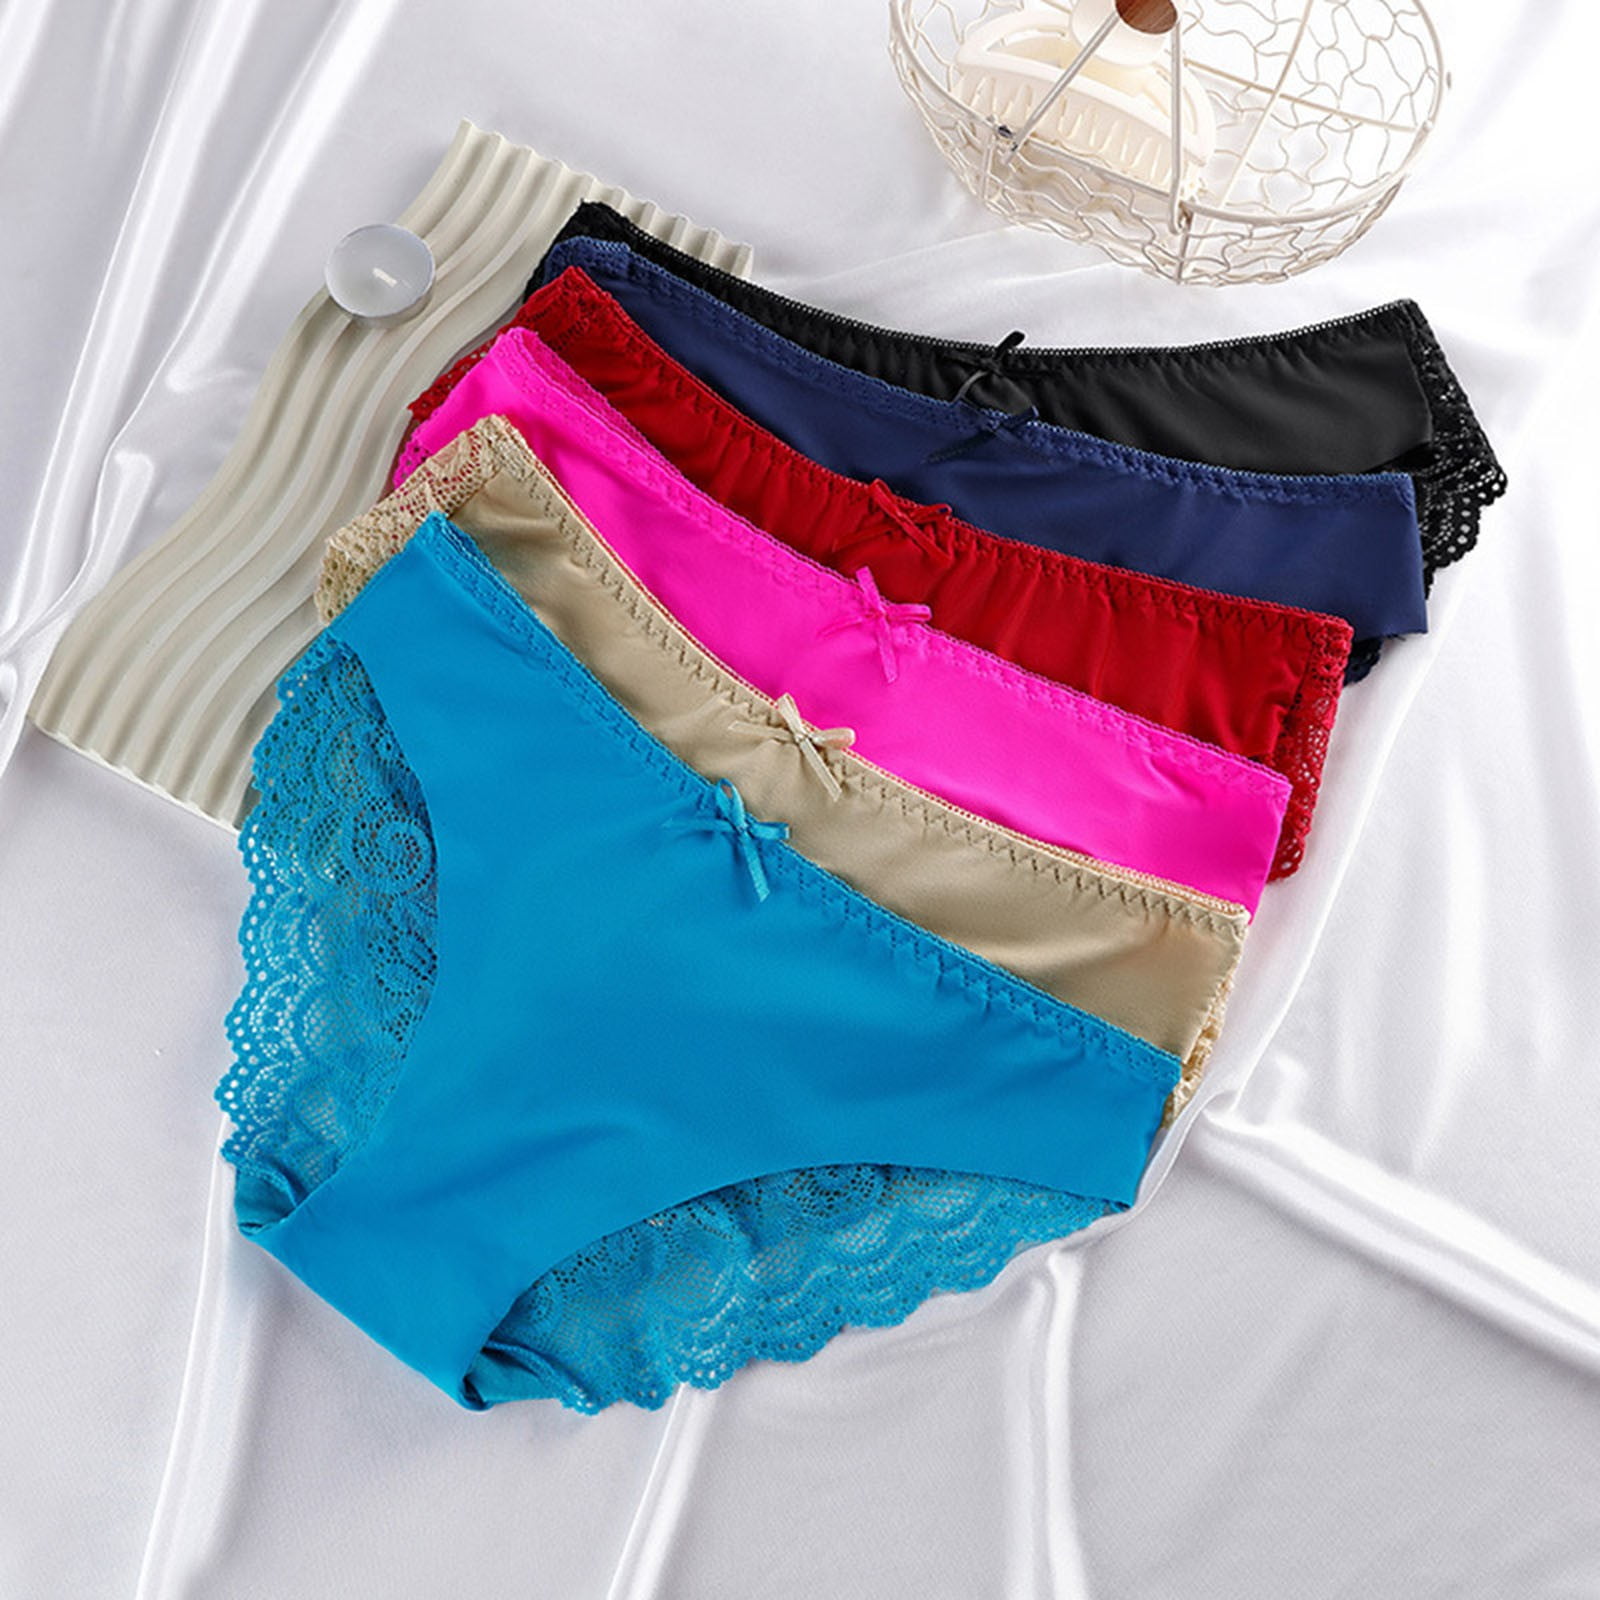 KaLI_store Womens Seamless Underwear Womens UnderwearHigh Waist Underwear  for Women Soft Comfortable Briefs Panty Hot Pink,XL 